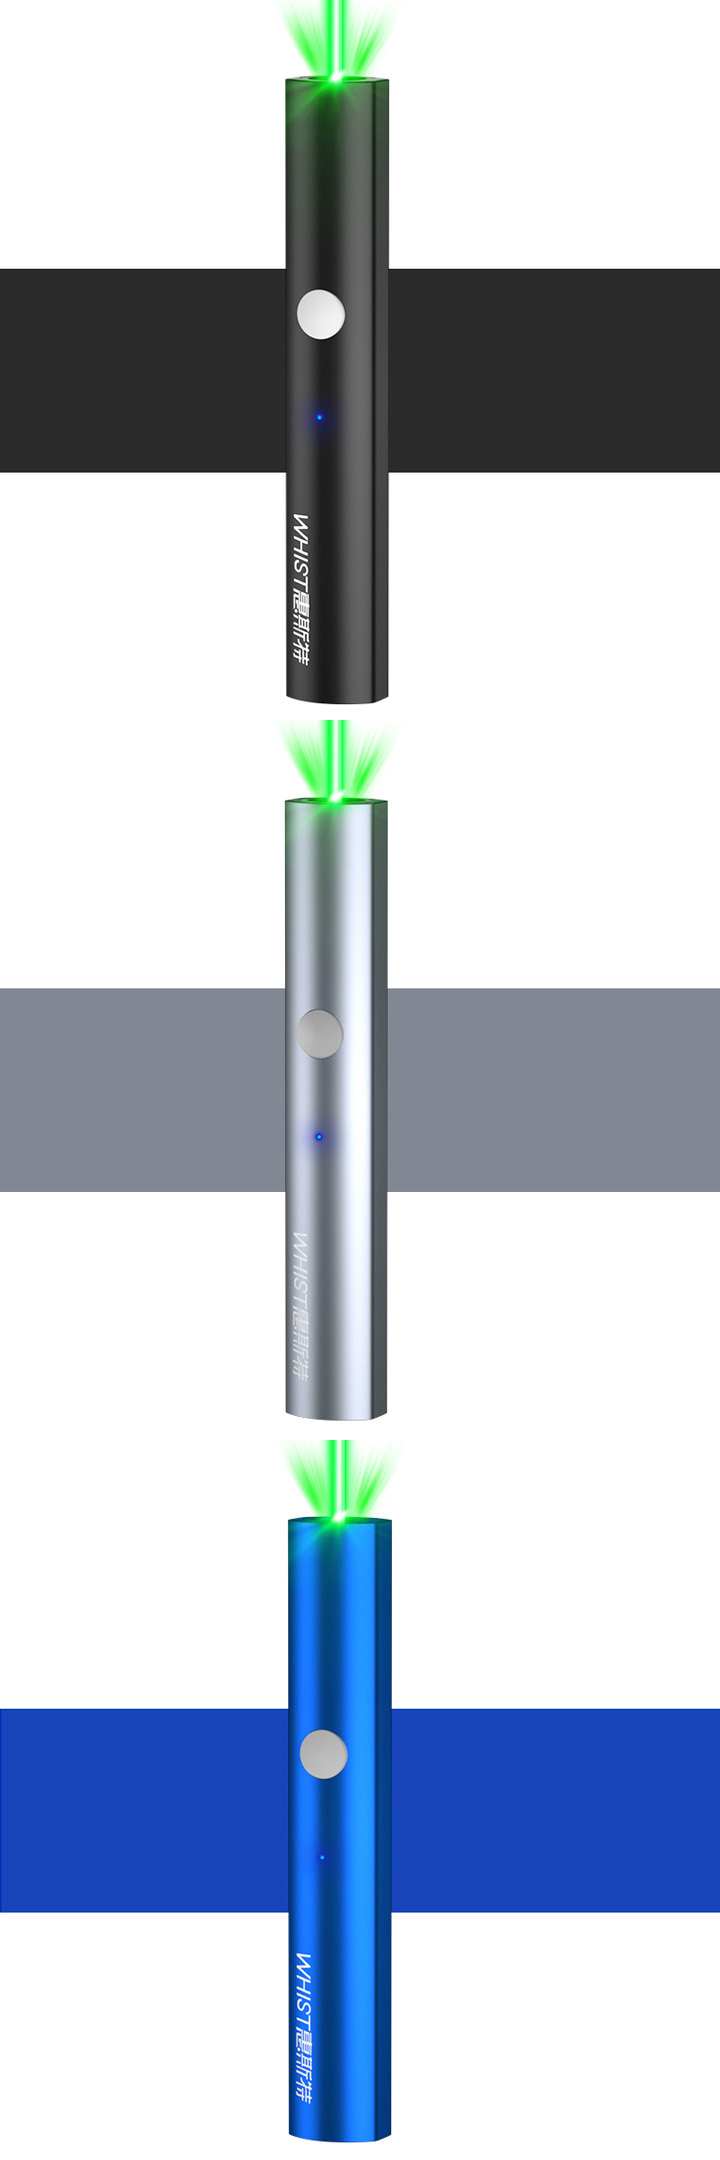 groene laserpointer 200mW